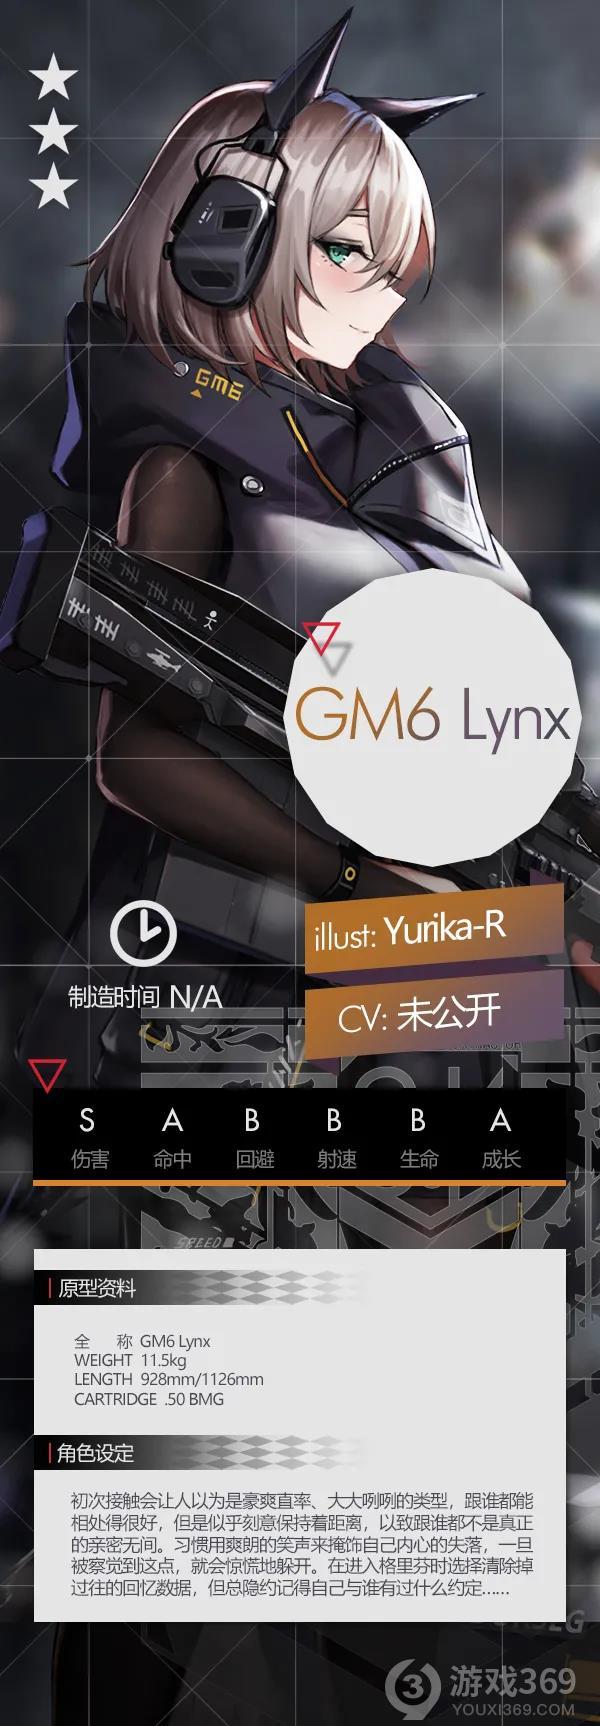 少女前线9月签到三星步枪GM6 Lynx介绍